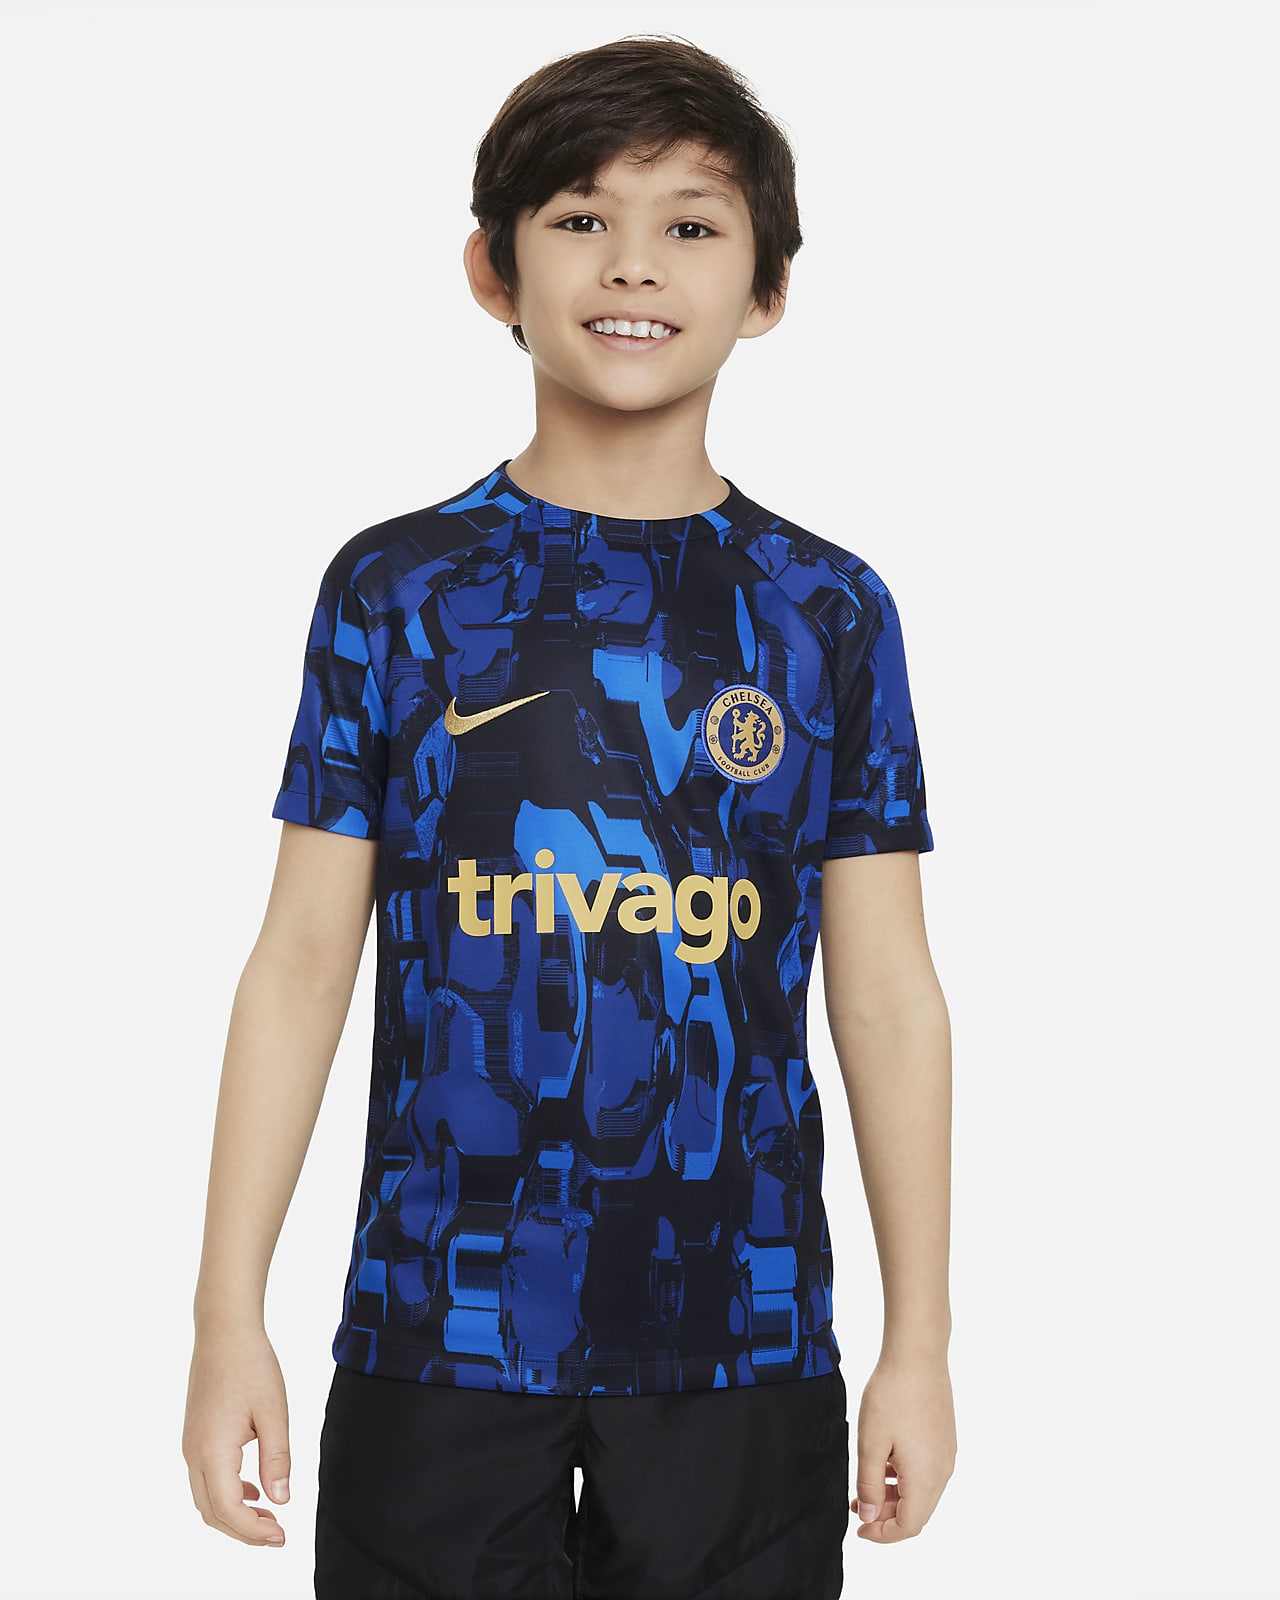 Ποδοσφαιρική μπλούζα προθέρμανσης Nike Dri-FIT Τσέλσι Academy Pro για μεγάλα παιδιά